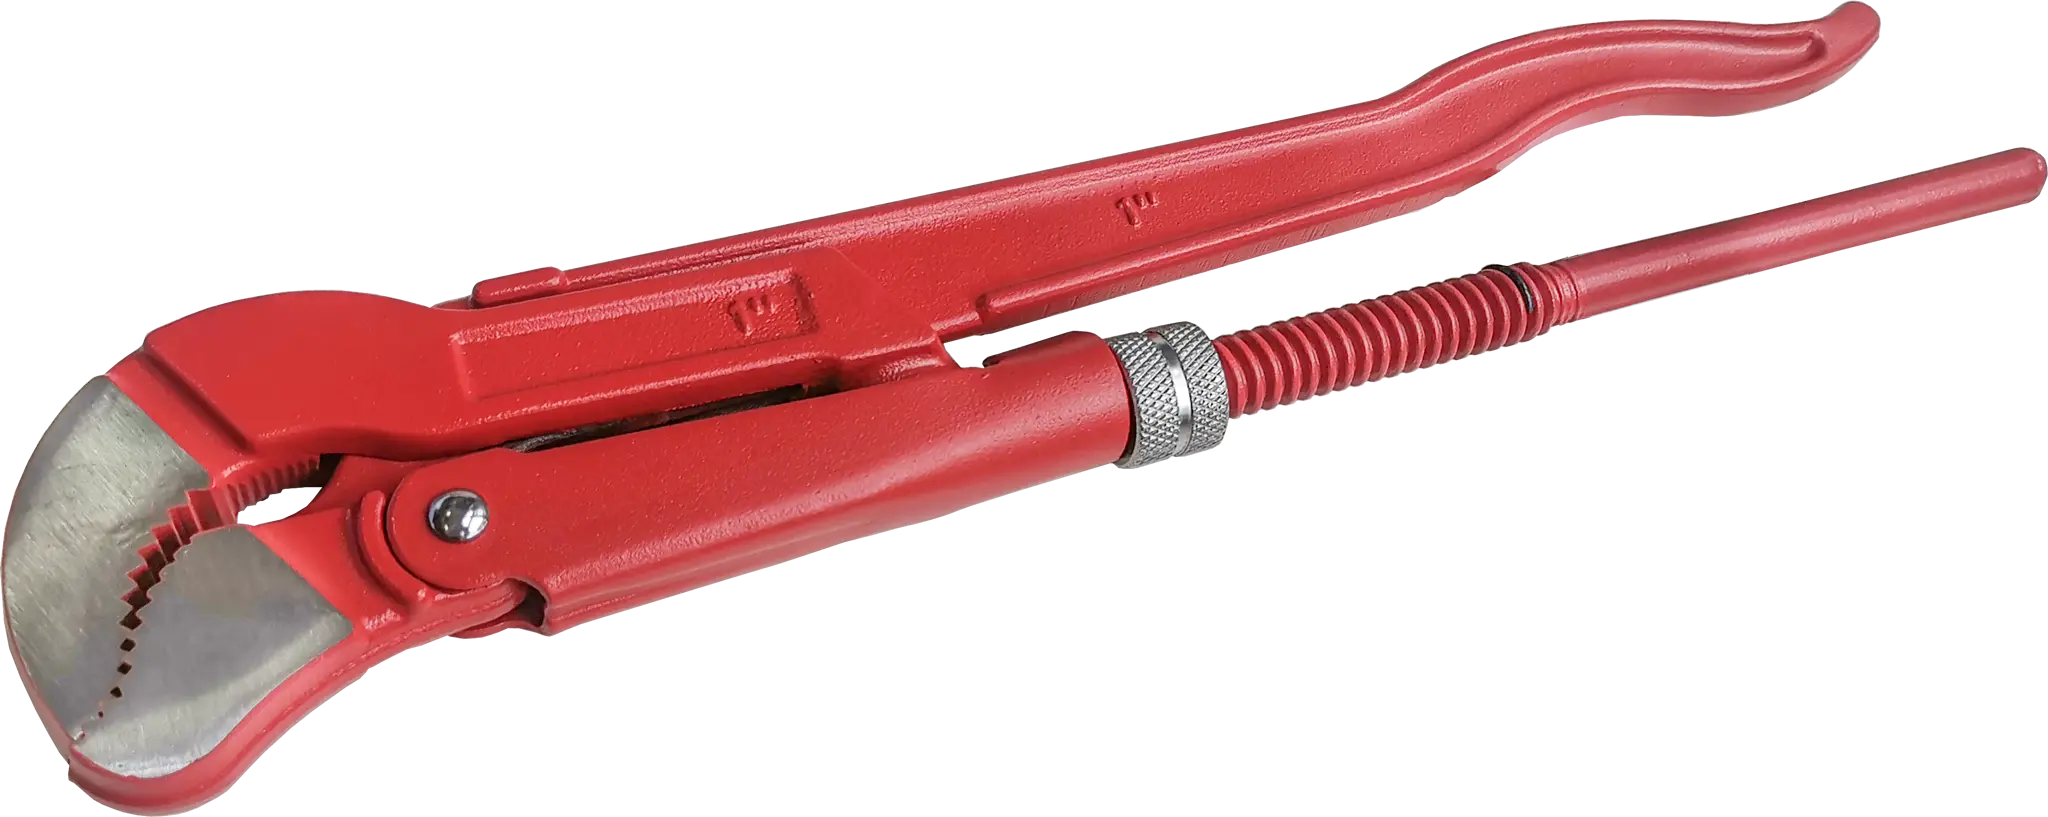 Ключ трубный газовый рычажный S 1045.0254 захват 25 мм, длина 320 мм ключ трубный fit усиленный 160 мм